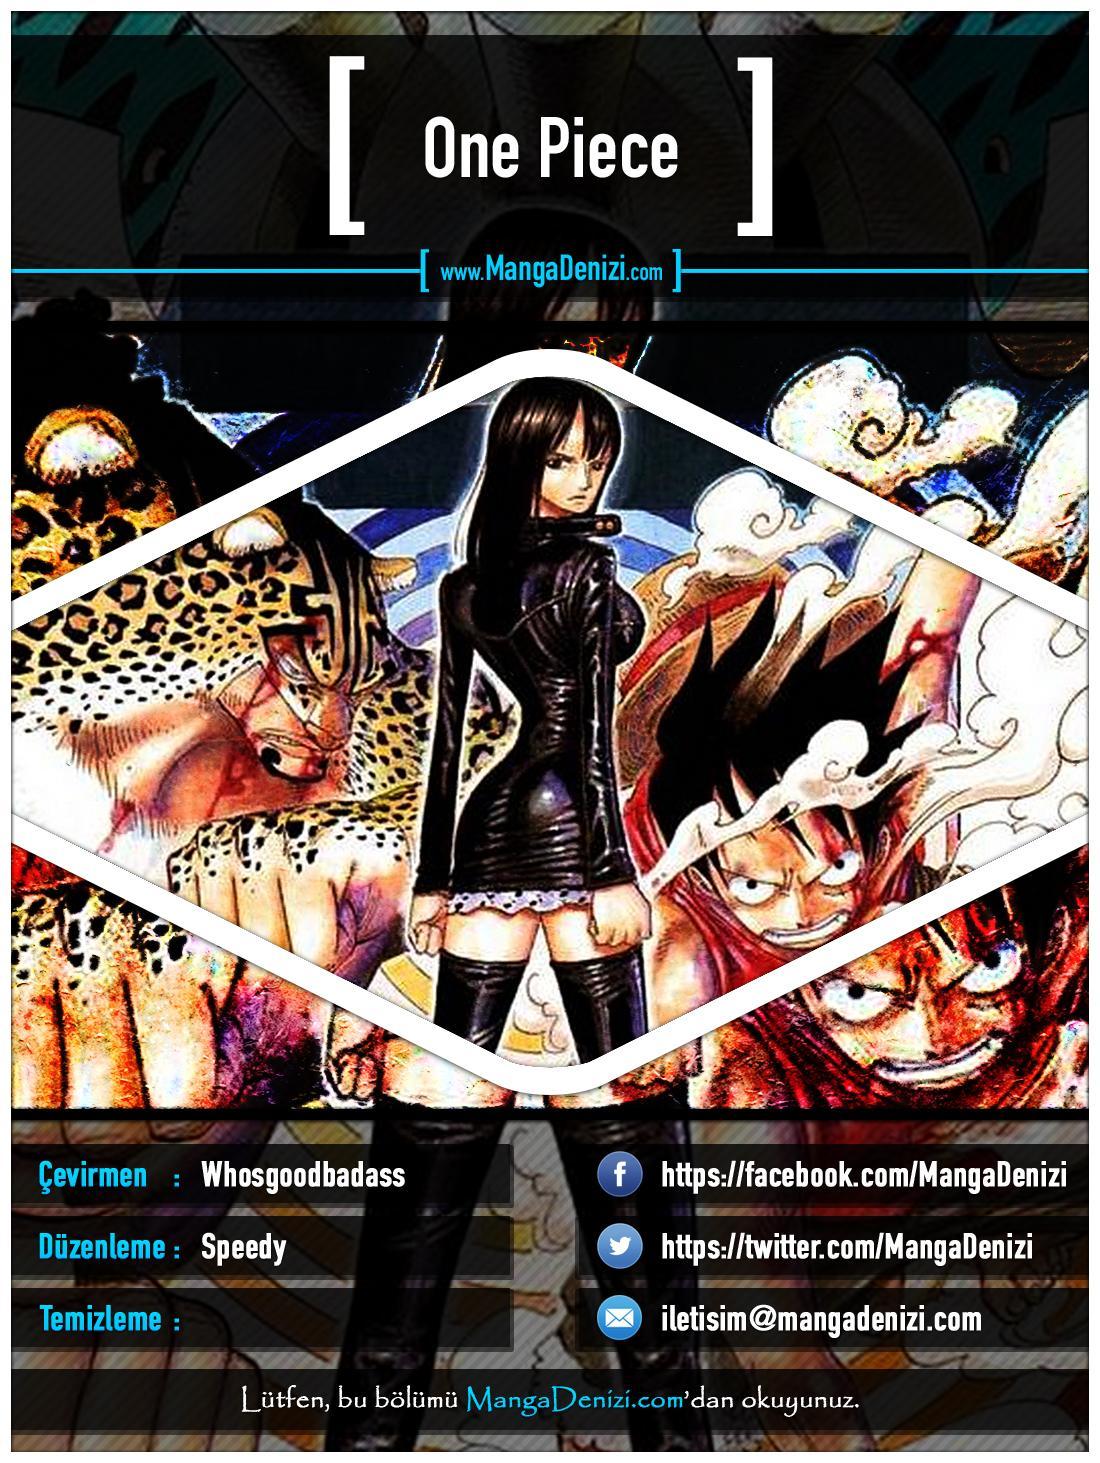 One Piece [Renkli] mangasının 0320 bölümünün 1. sayfasını okuyorsunuz.